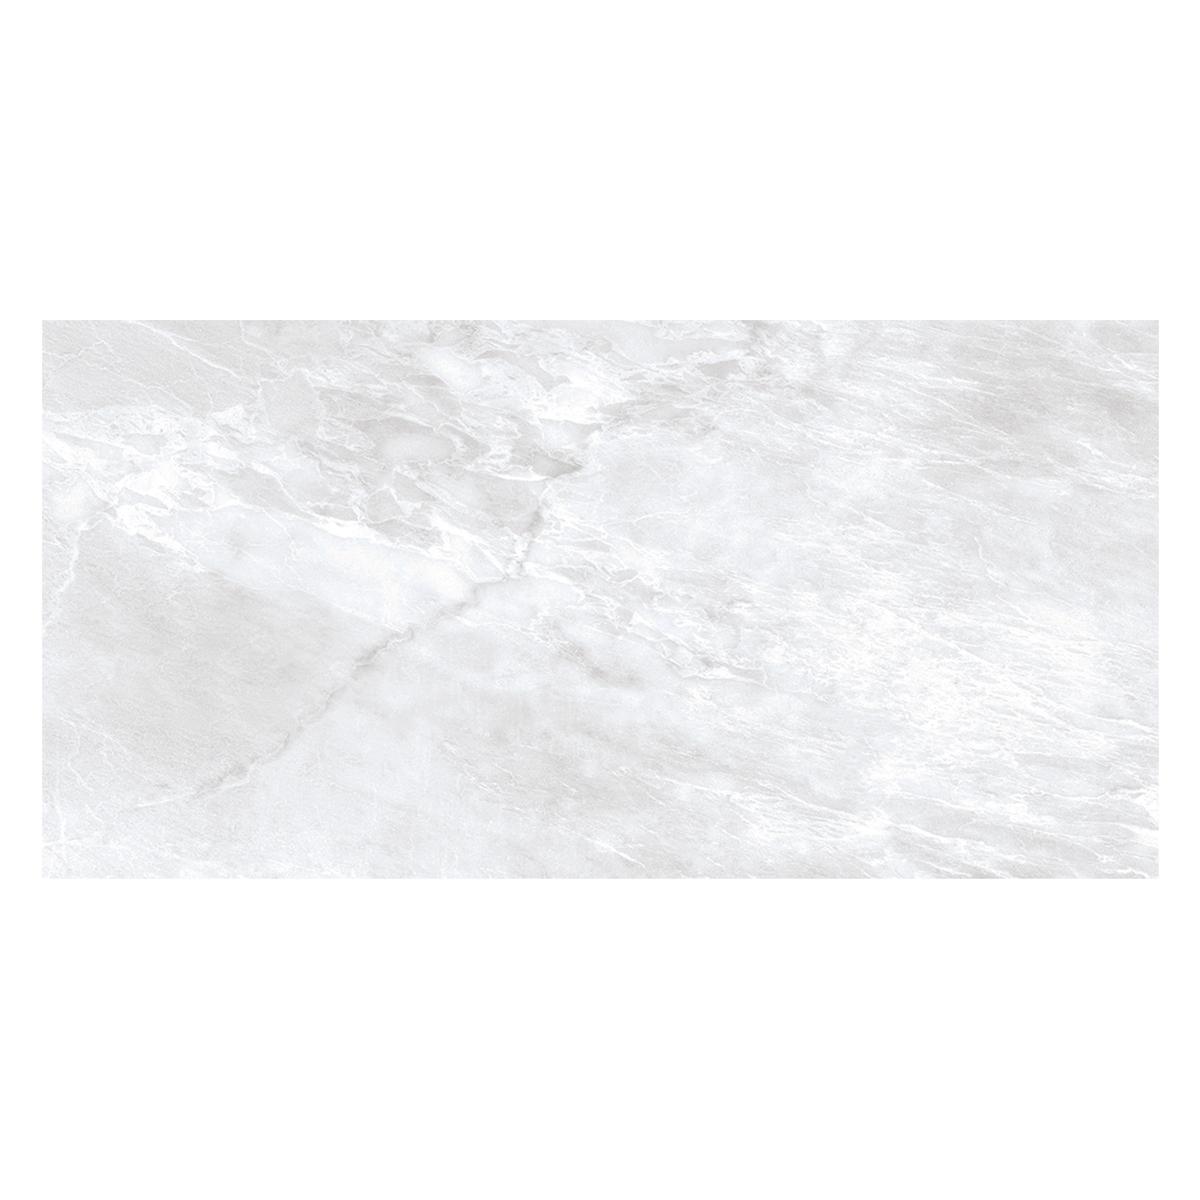 Porcelanato Hamlet Blanco Pulido - 60X120 cm - 1.44 m2